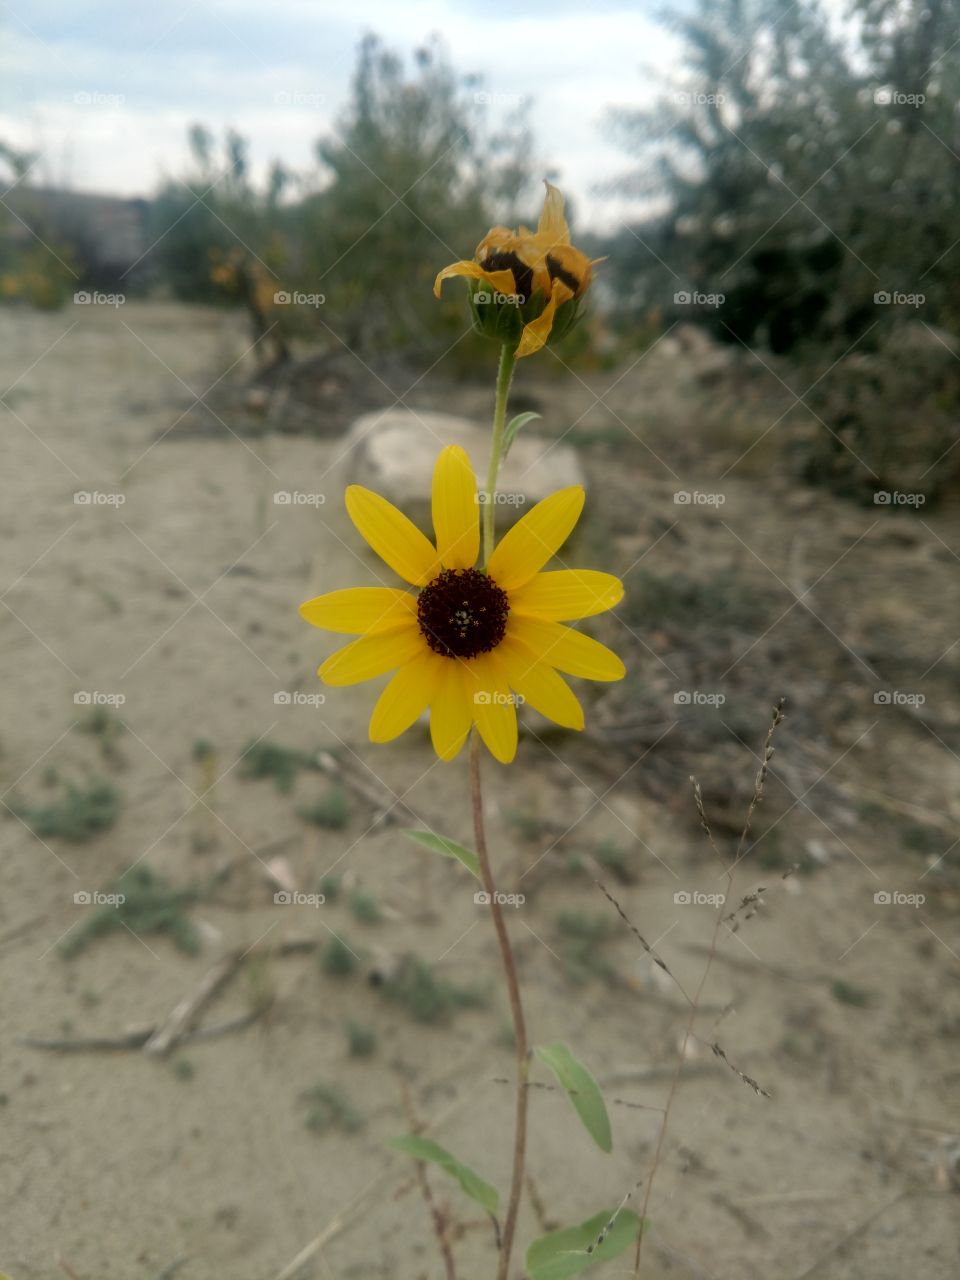 wild sunflower